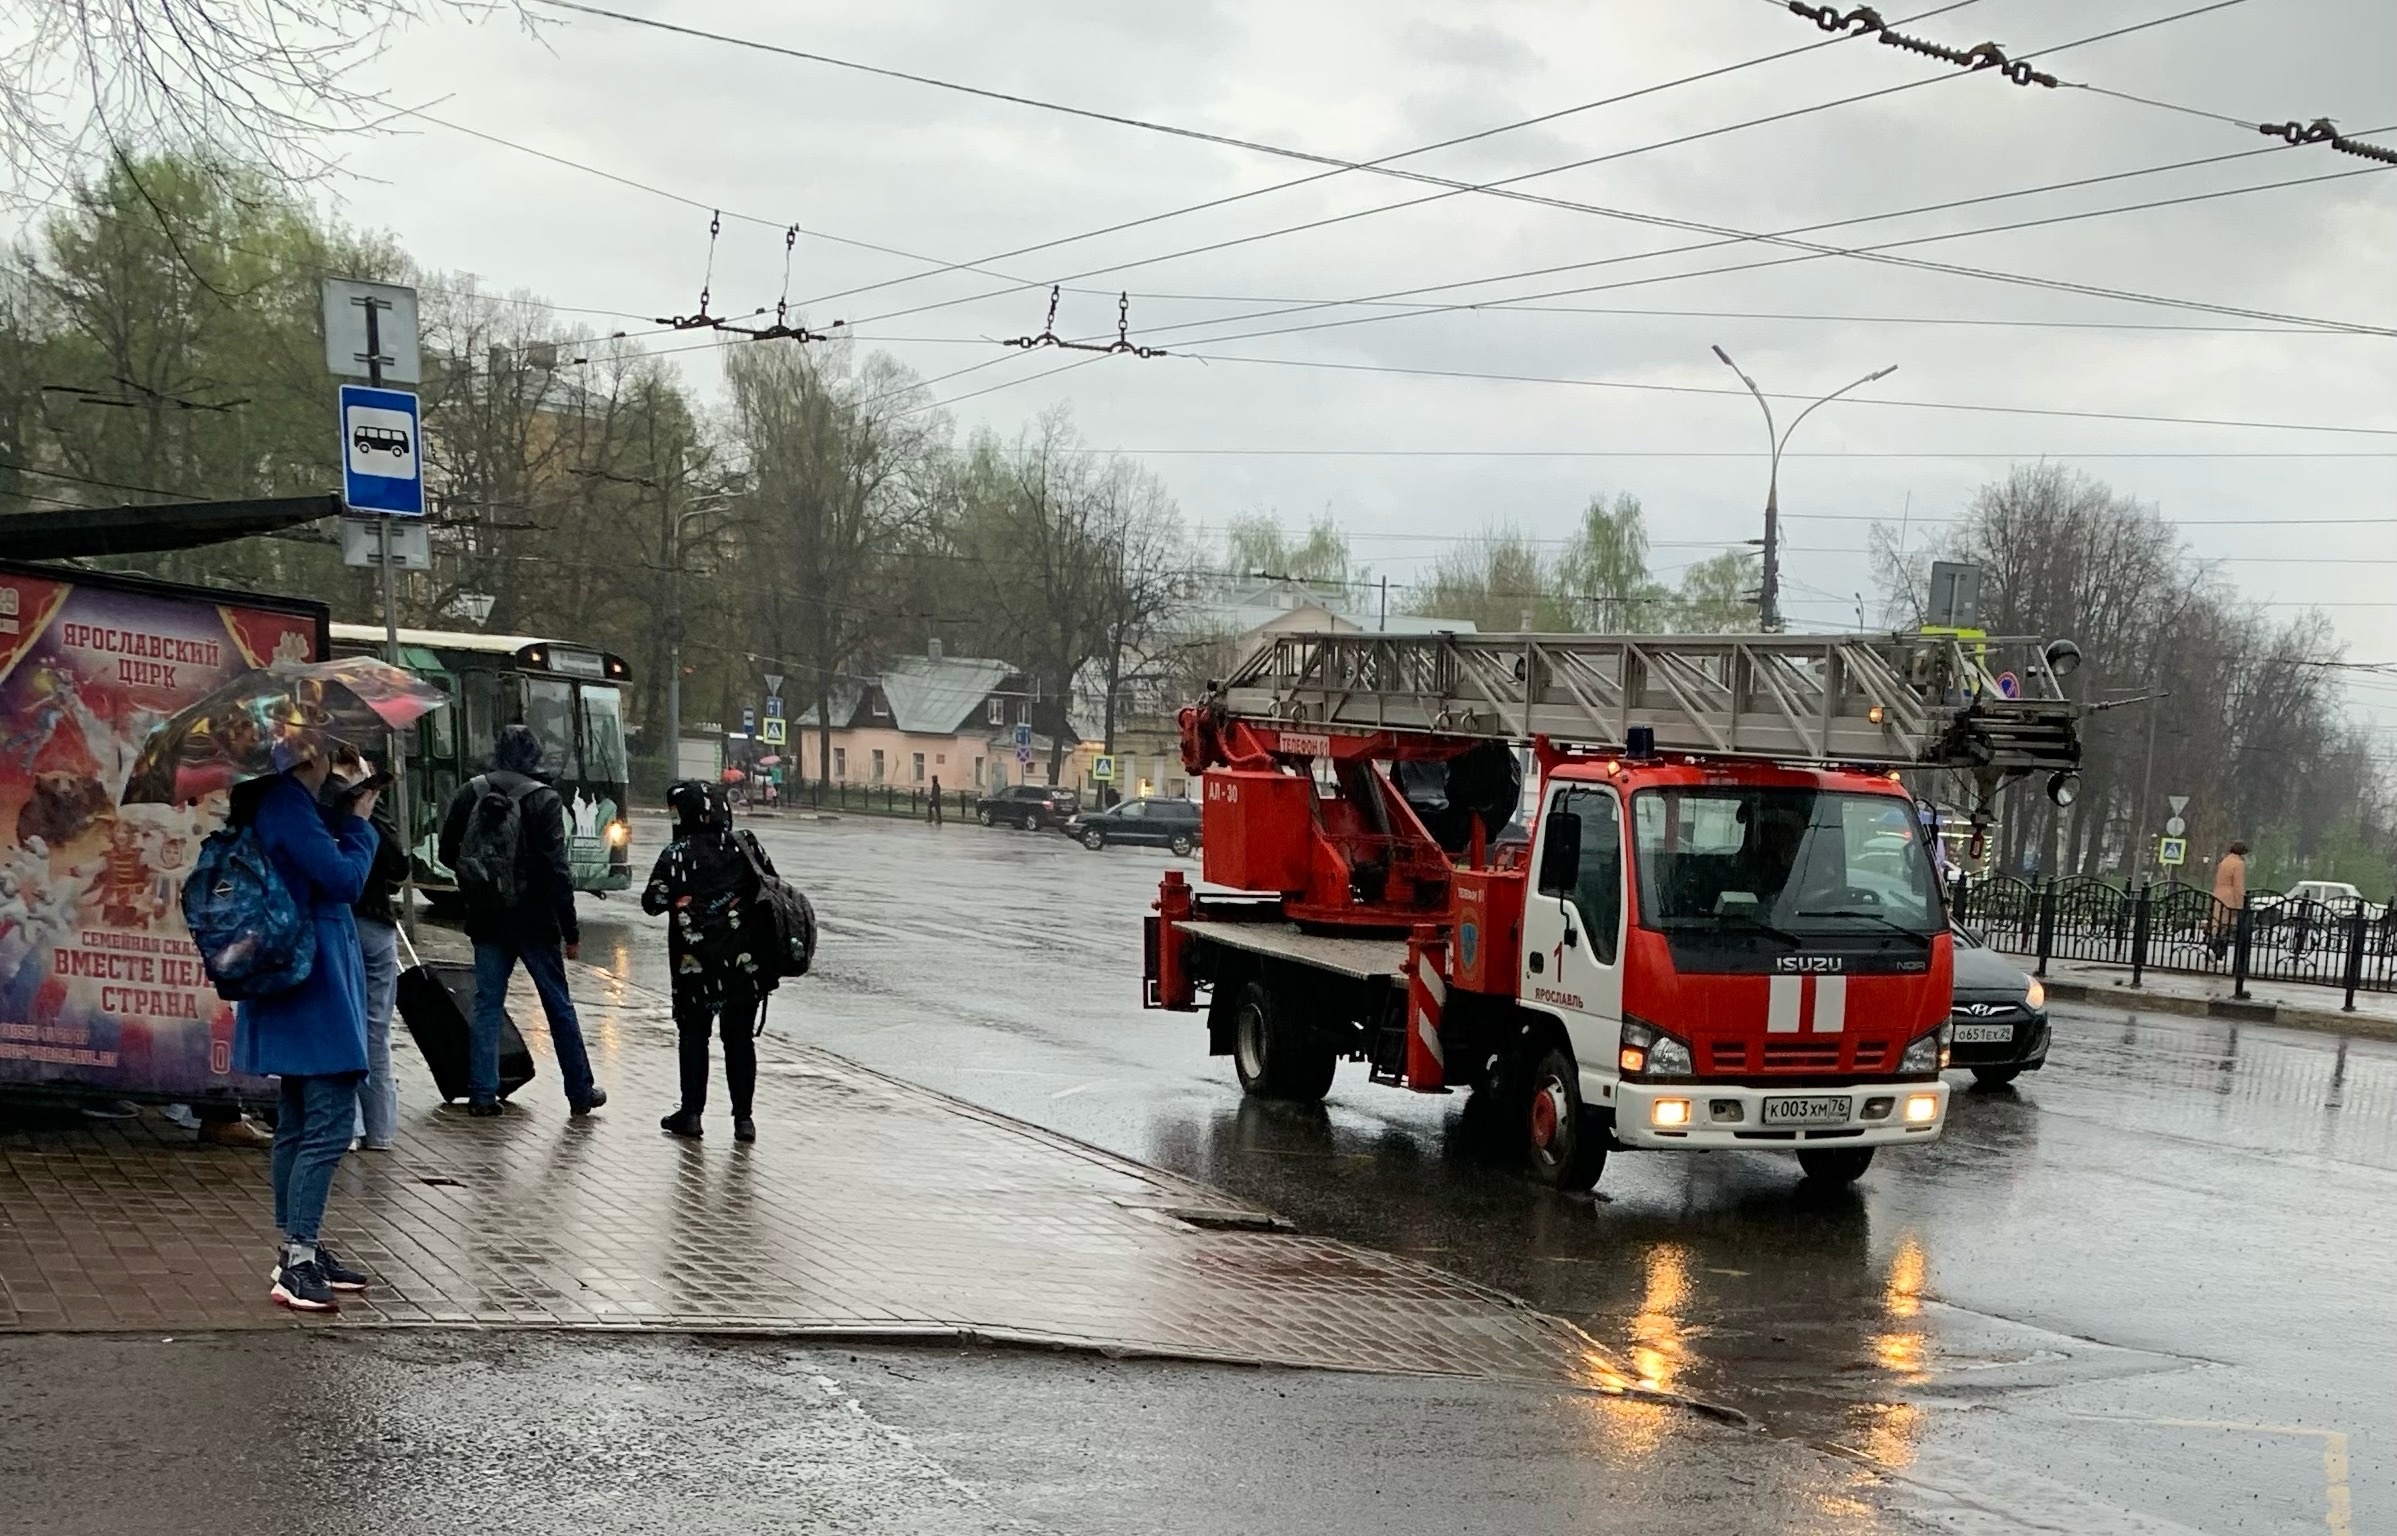 МЧС, скорая, газовики: что происходит на Шевелюхе в Ярославле